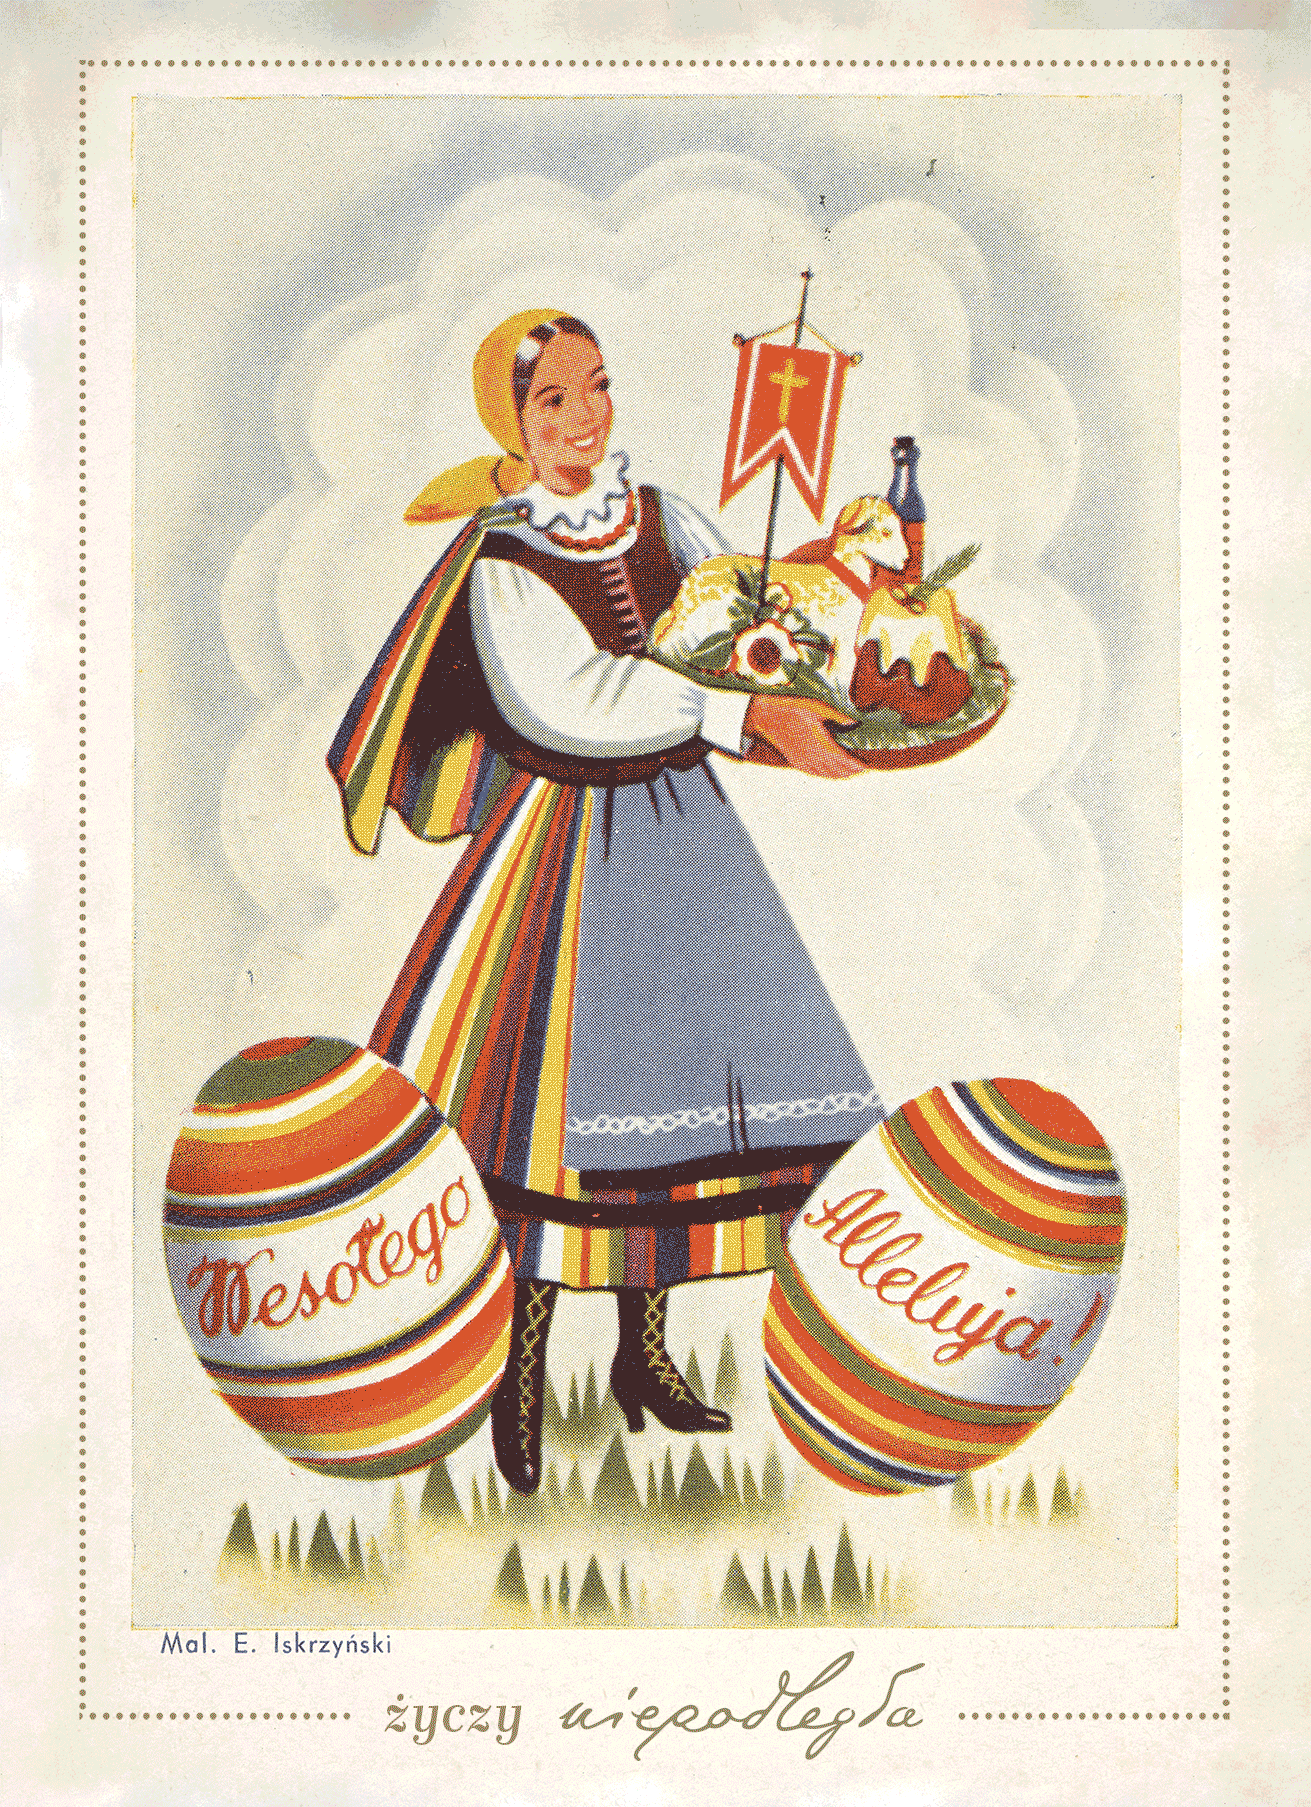 kartka wielkanocna z kobietą w ludowym stroju trzymającą wielkanocne potrawy, na dole pisanki